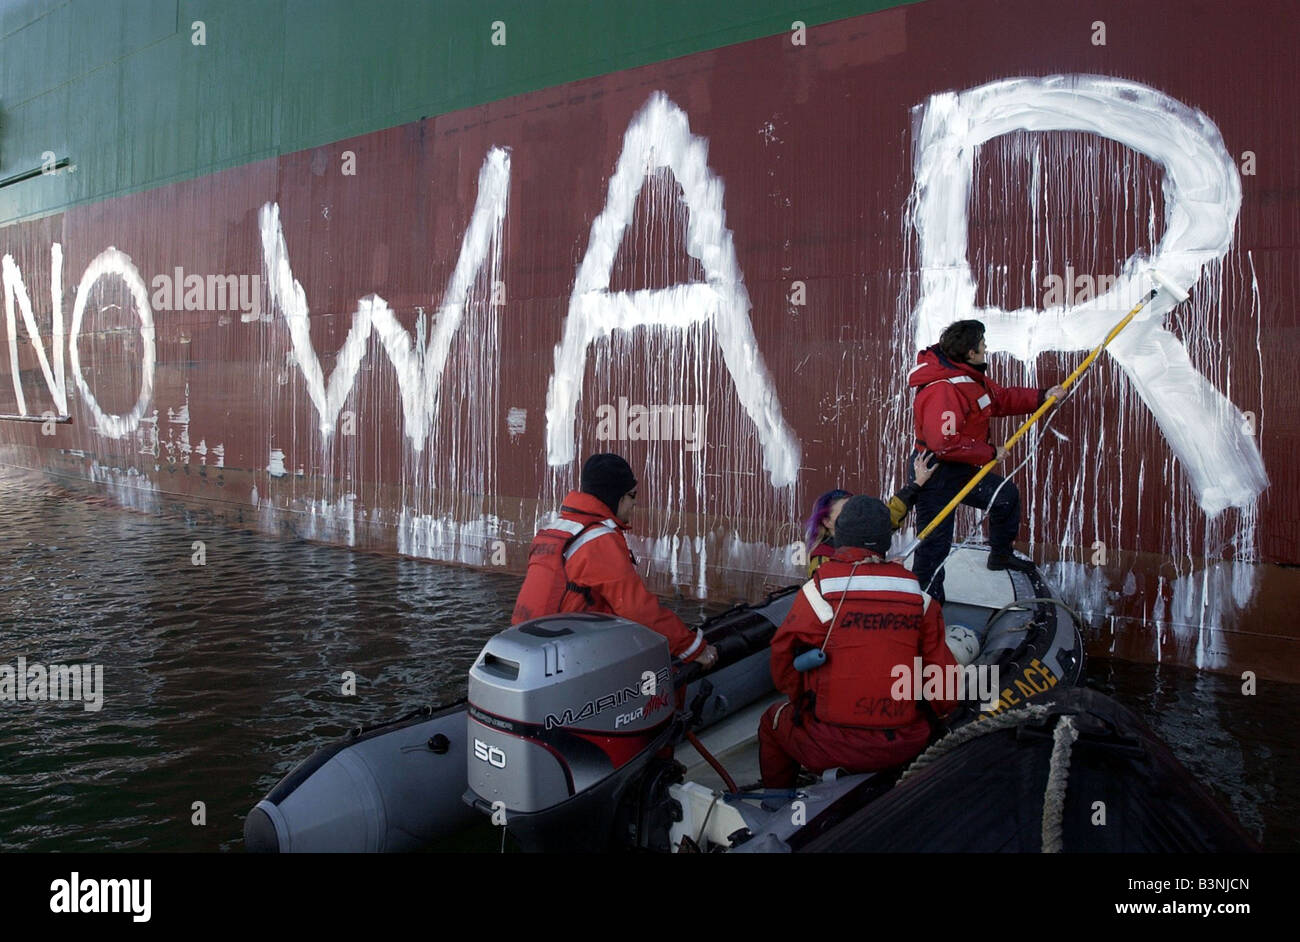 Les manifestants de Greenpeace sur la guerre aucune peinture Magdalena vert dans les eaux de Southampton Janvier 2003 Banque D'Images